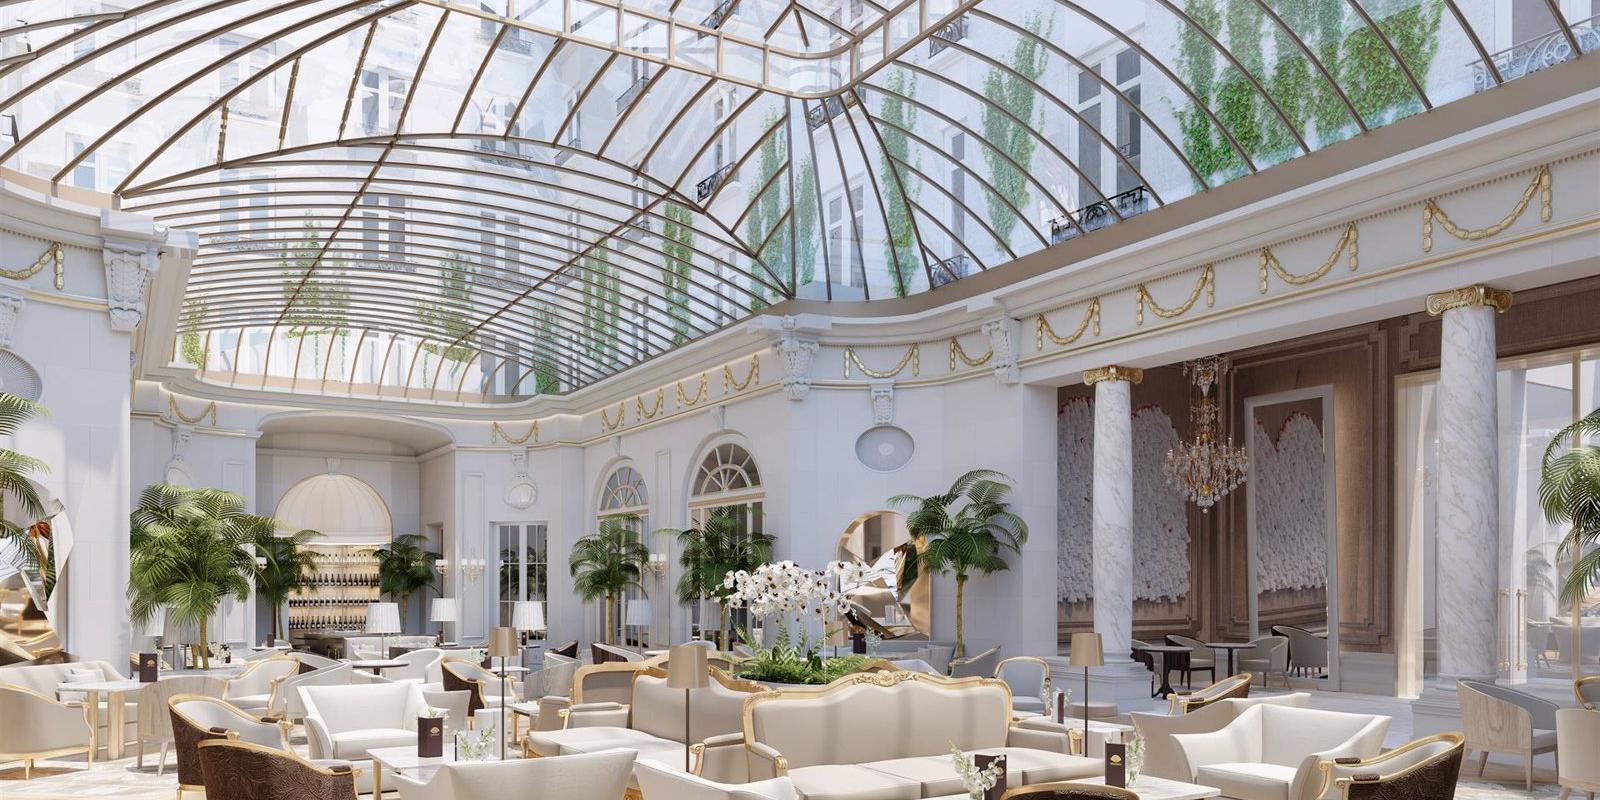 El hotel Ritz de Madrid vuelve a abrir sus puertas tras su reforma más importante